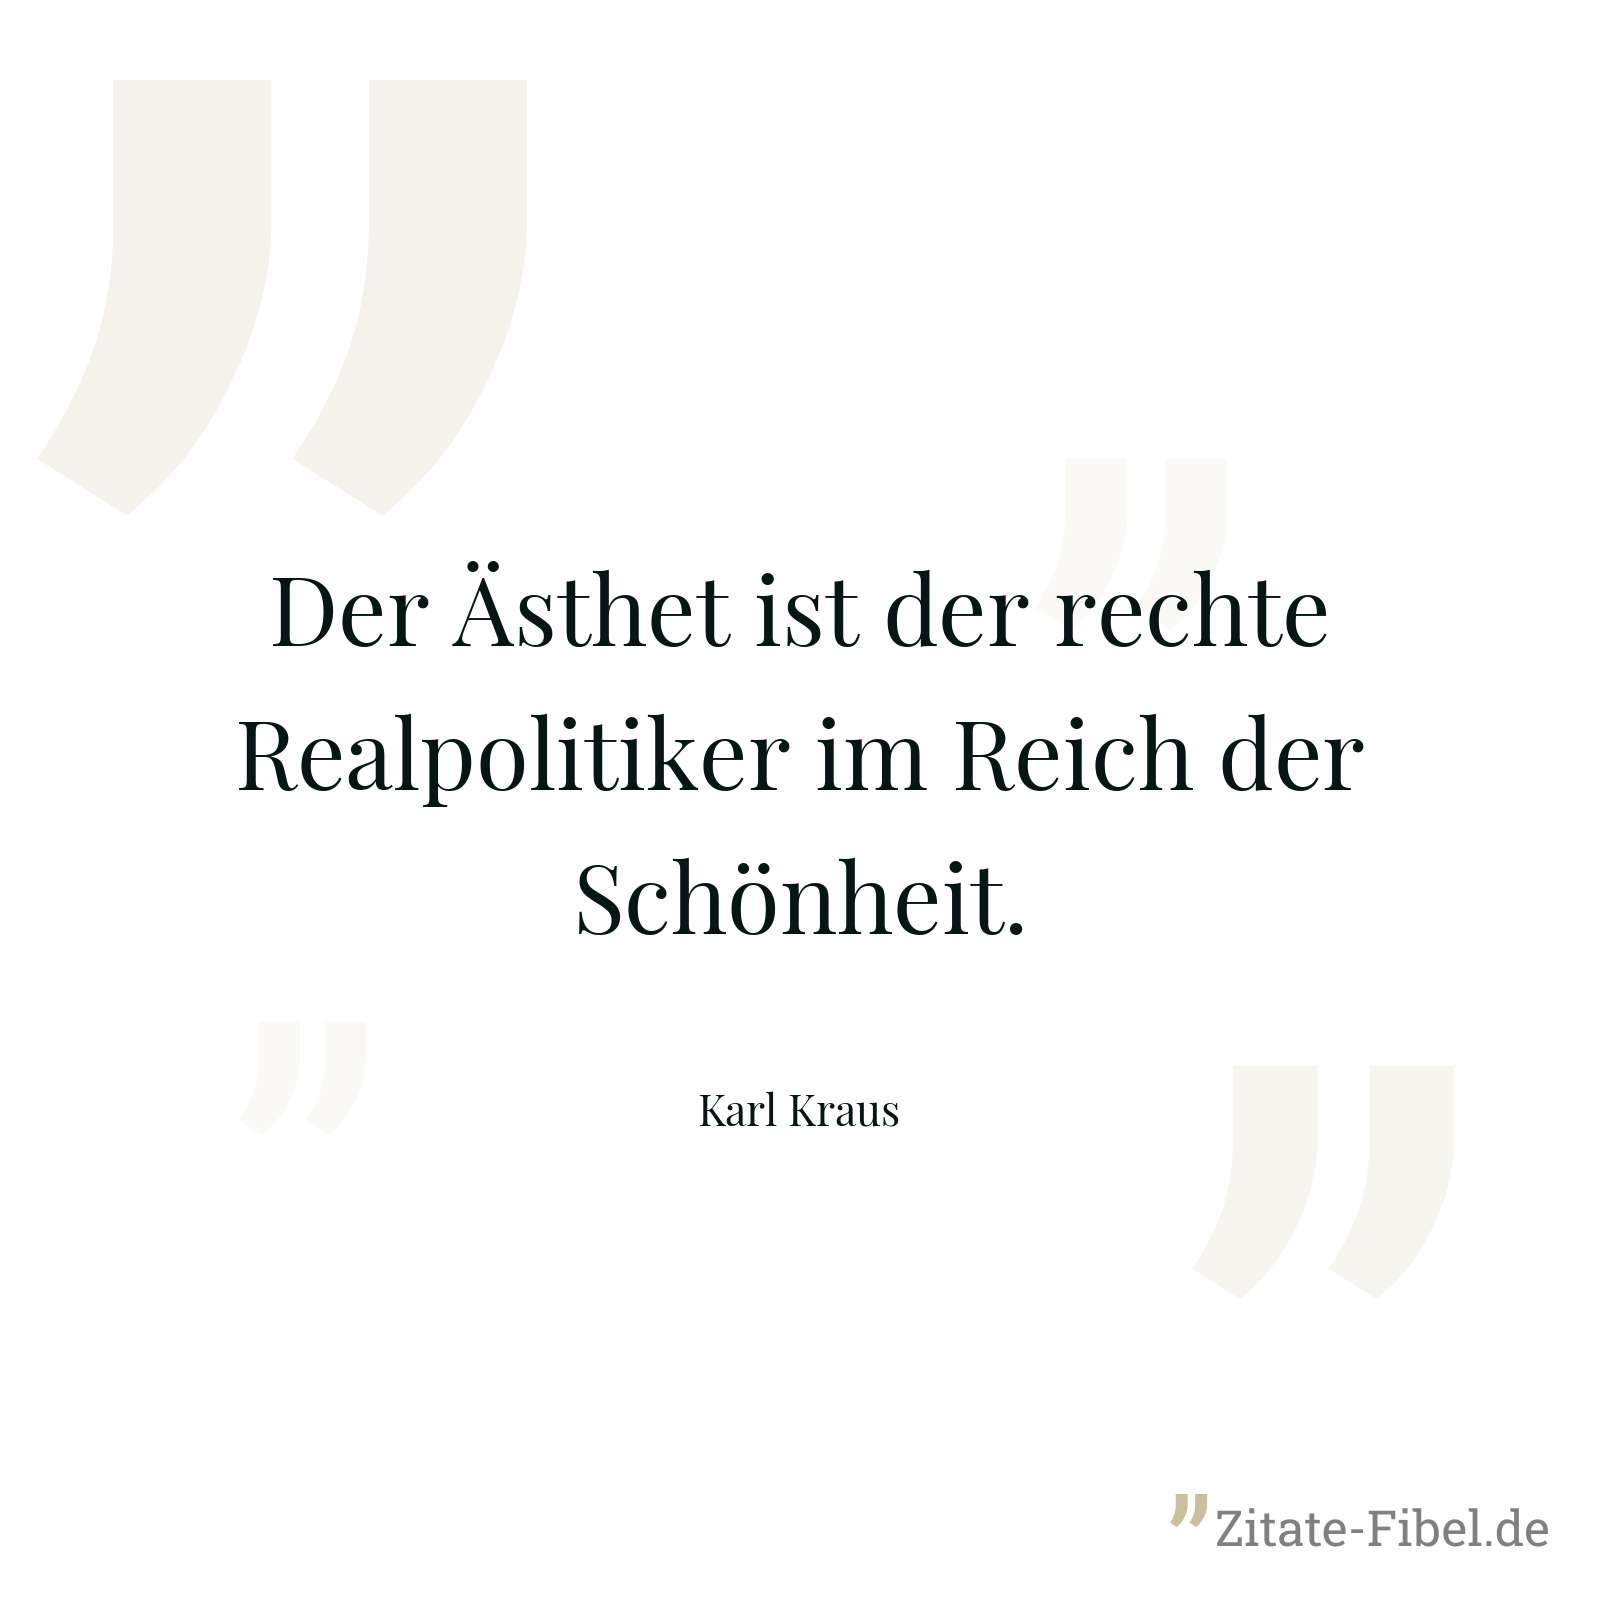 Der Ästhet ist der rechte Realpolitiker im Reich der Schönheit. - Karl Kraus